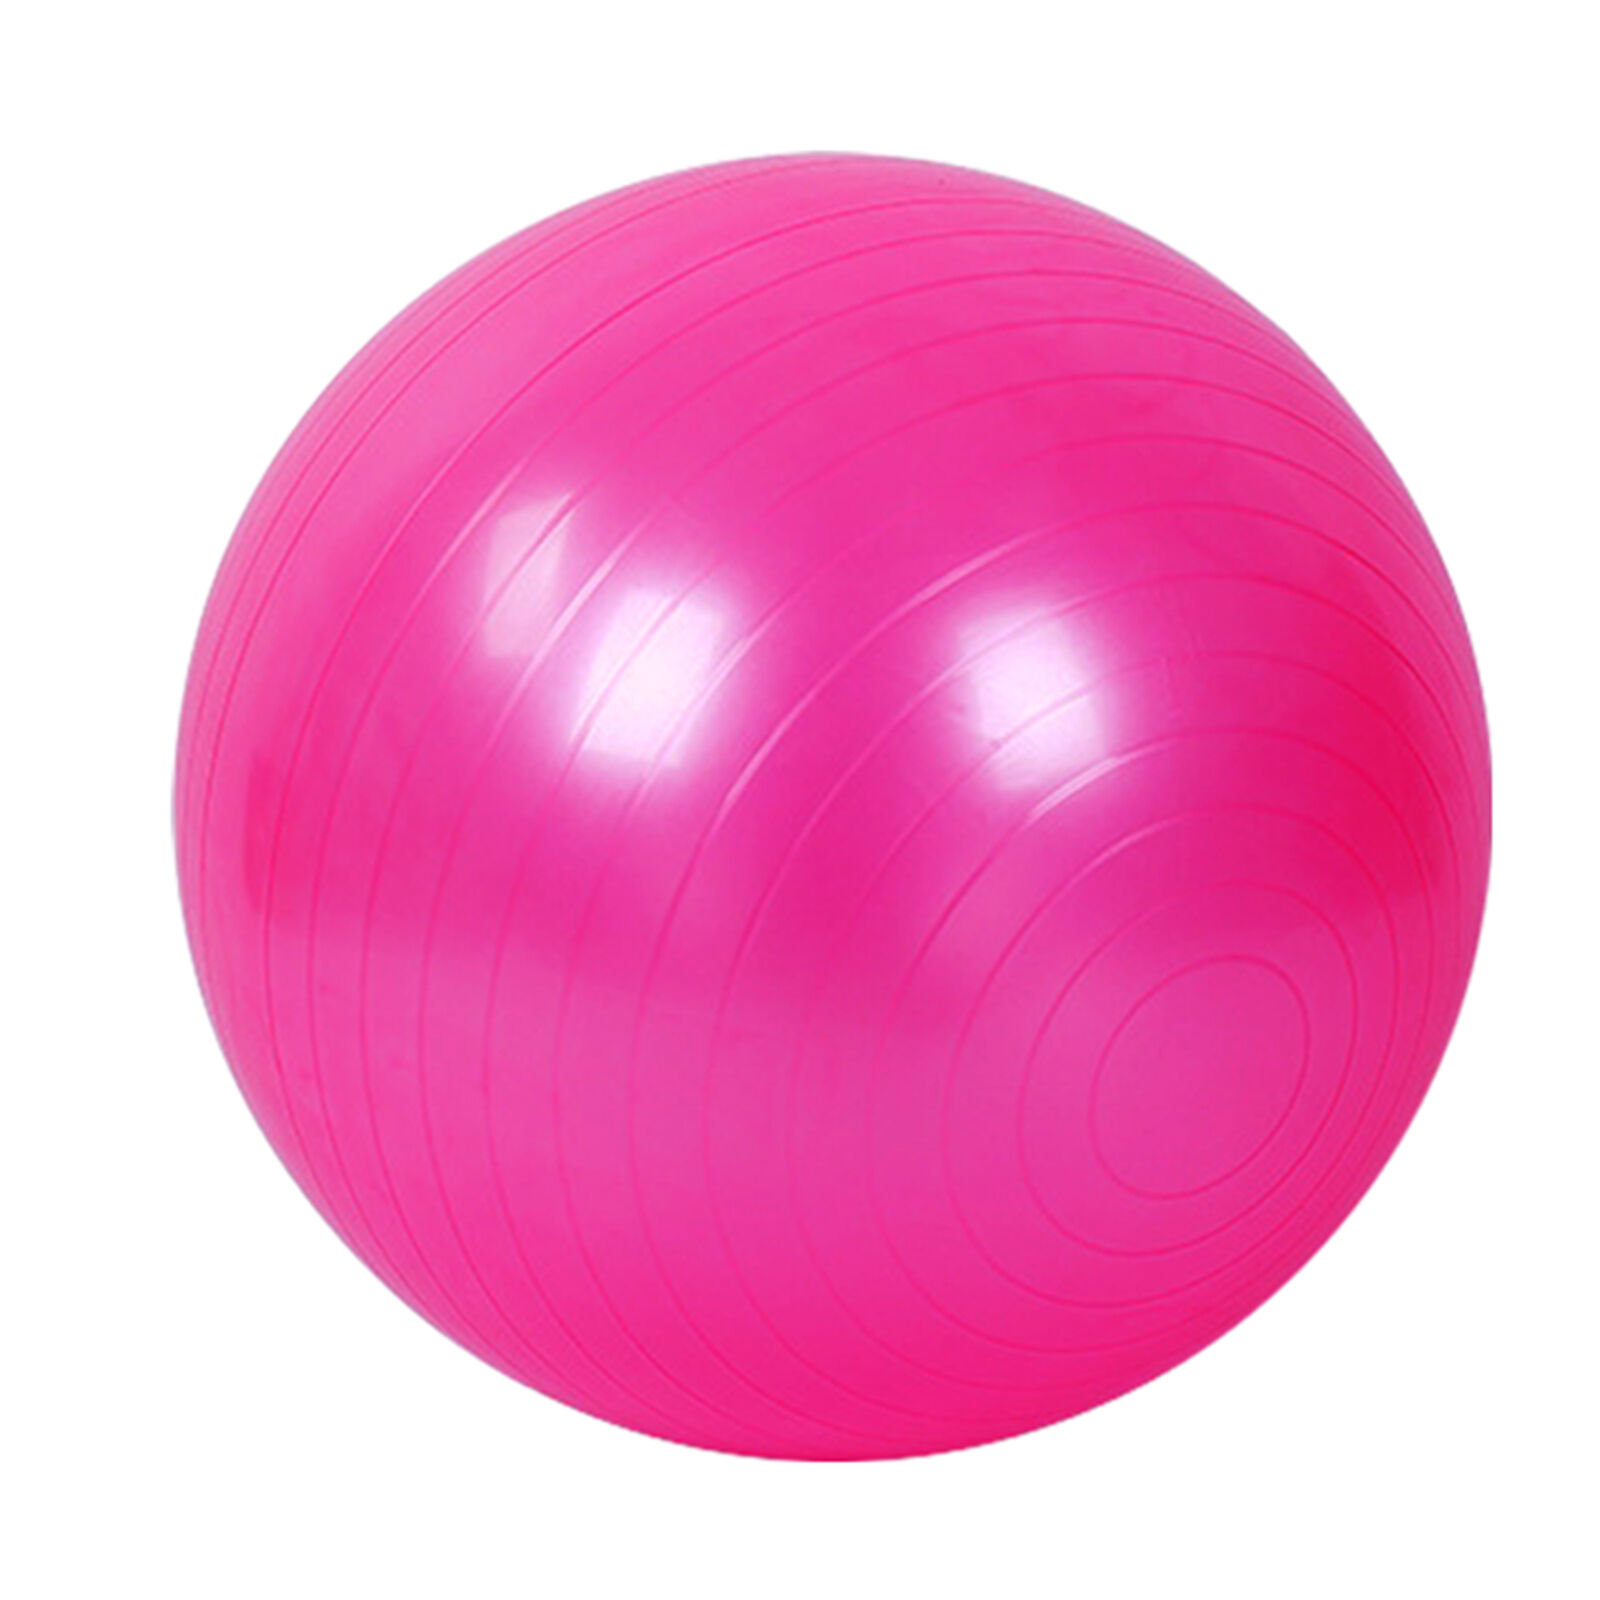 Фитбол с насосом UNIX Fit антивзрыв, 75 см, розовый UNIX Fit™ Фитболы